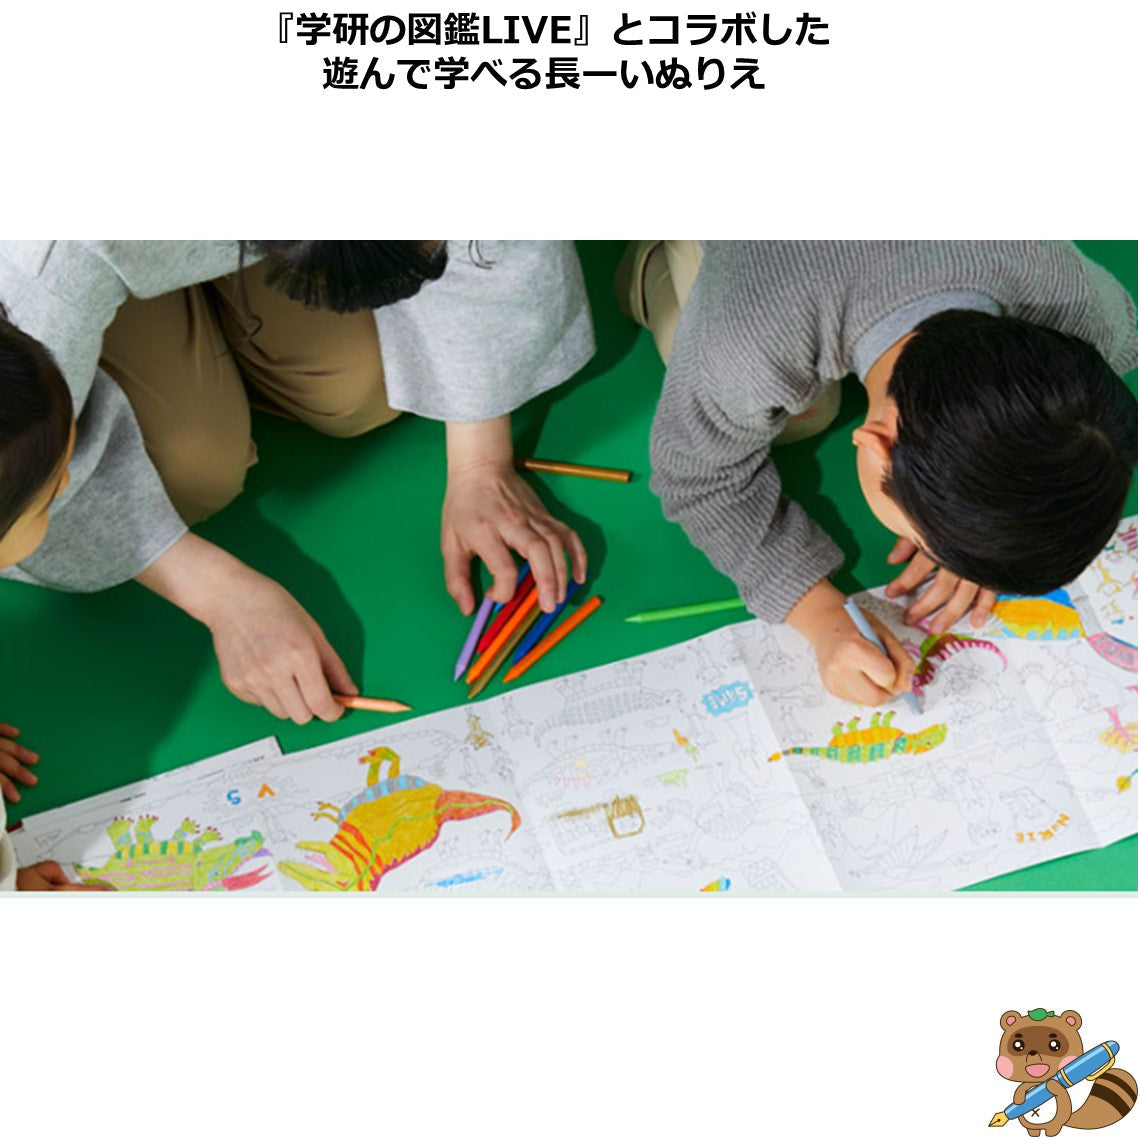 ＜遊んで学べる図鑑の長ーいぬりえ＞
NuRIEbook KYORYU ZUKAN
NU-BK1